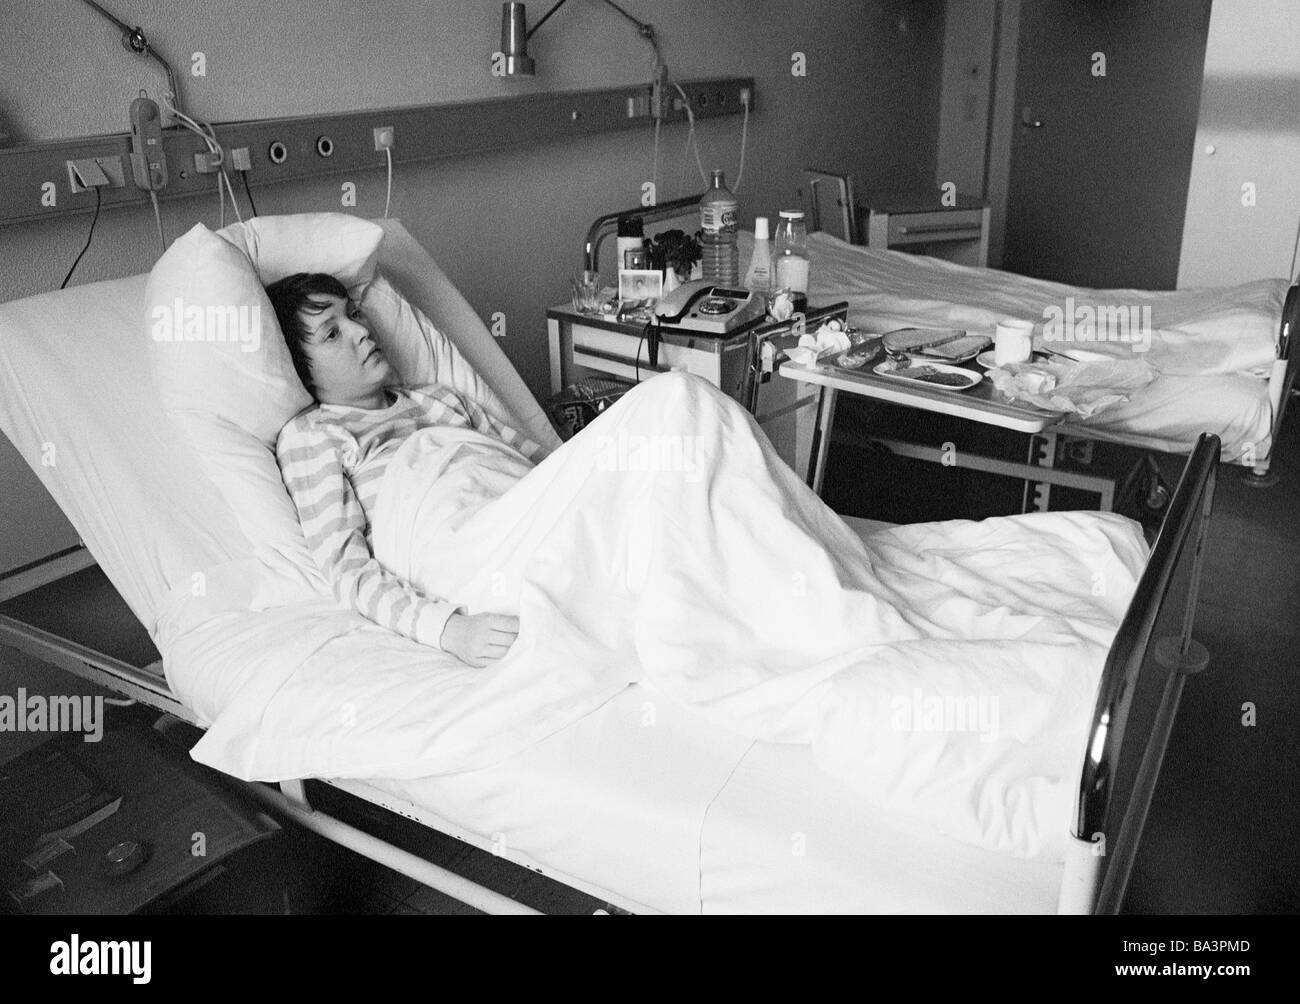 Ottanta, foto in bianco e nero, la gente, la salute, la giovane donna si trova in una sickbed di un ospedale, di età compresa tra i 25 e i 30 anni, Monika Foto Stock